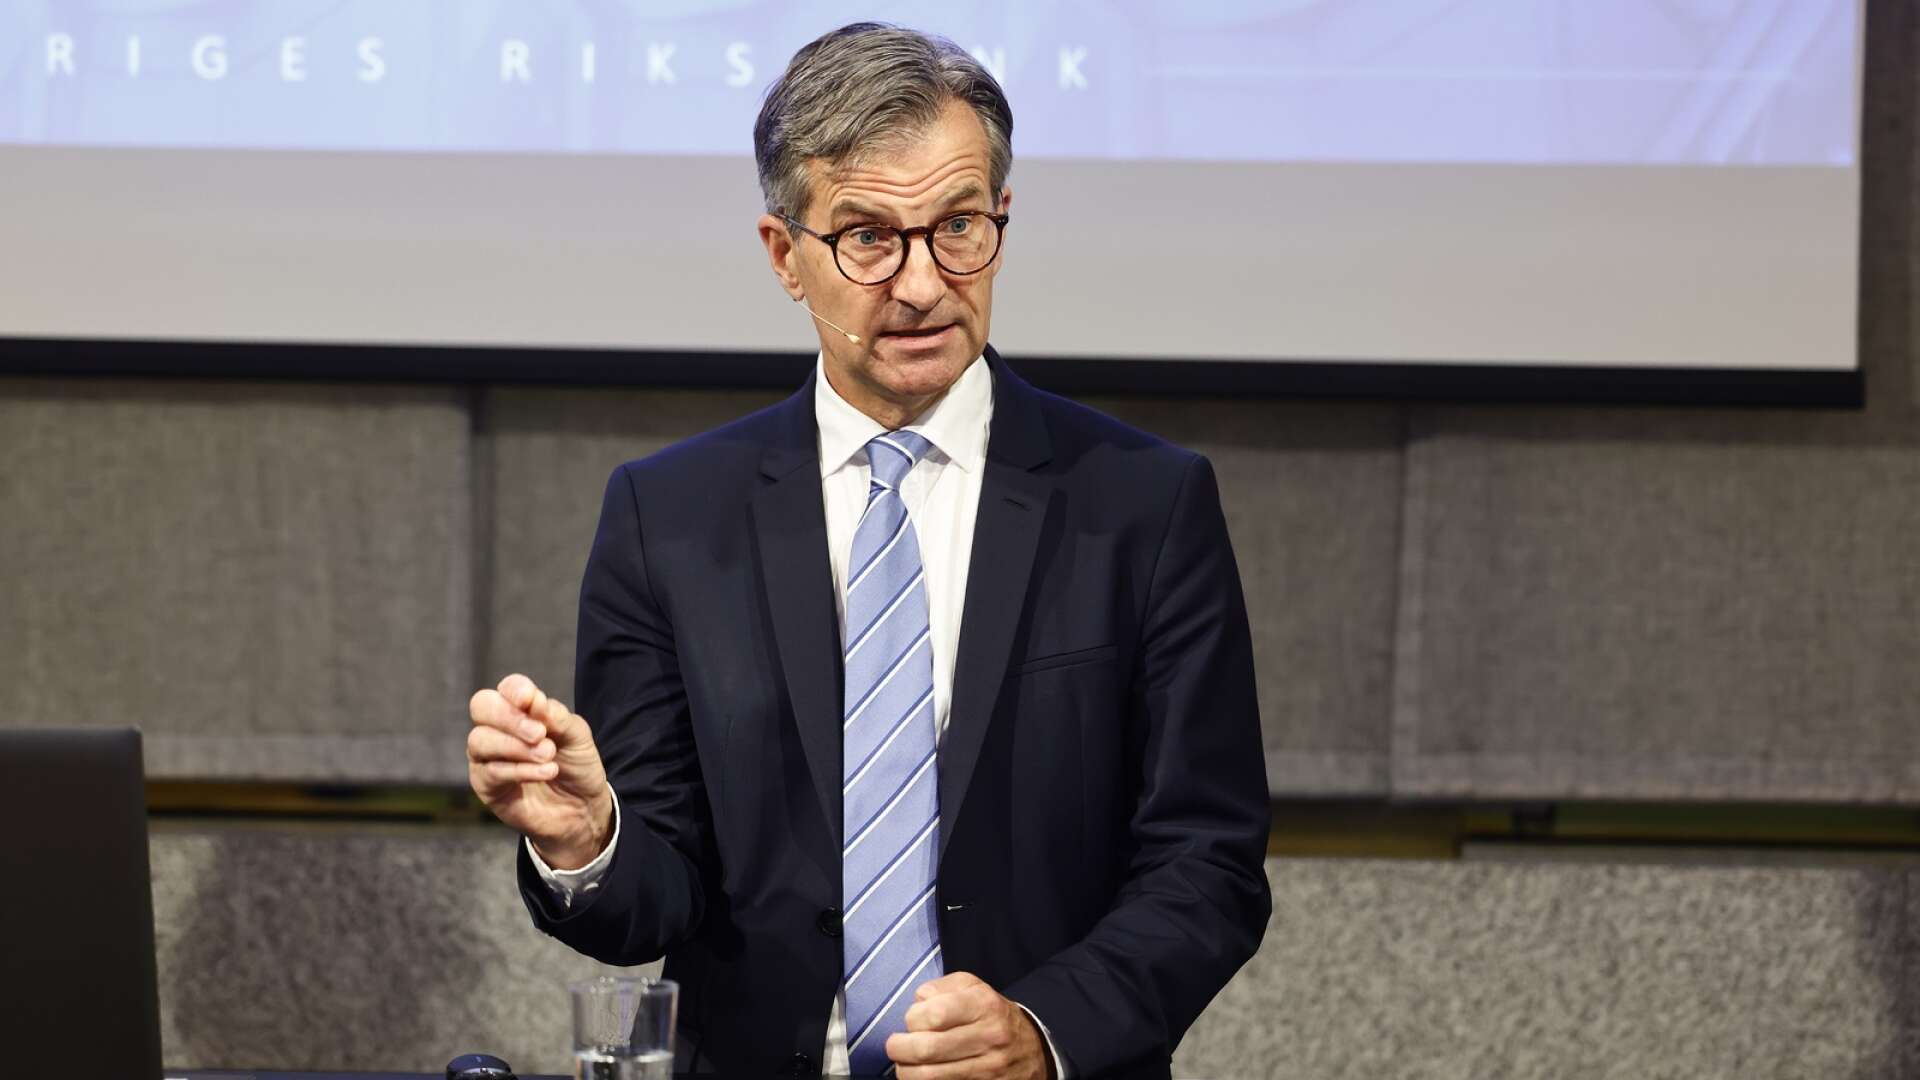 Riksbankschefen Erik Thedéen meddelar beslutet att höja styrräntan med 0,25 procentenheter till 3,75 procent.